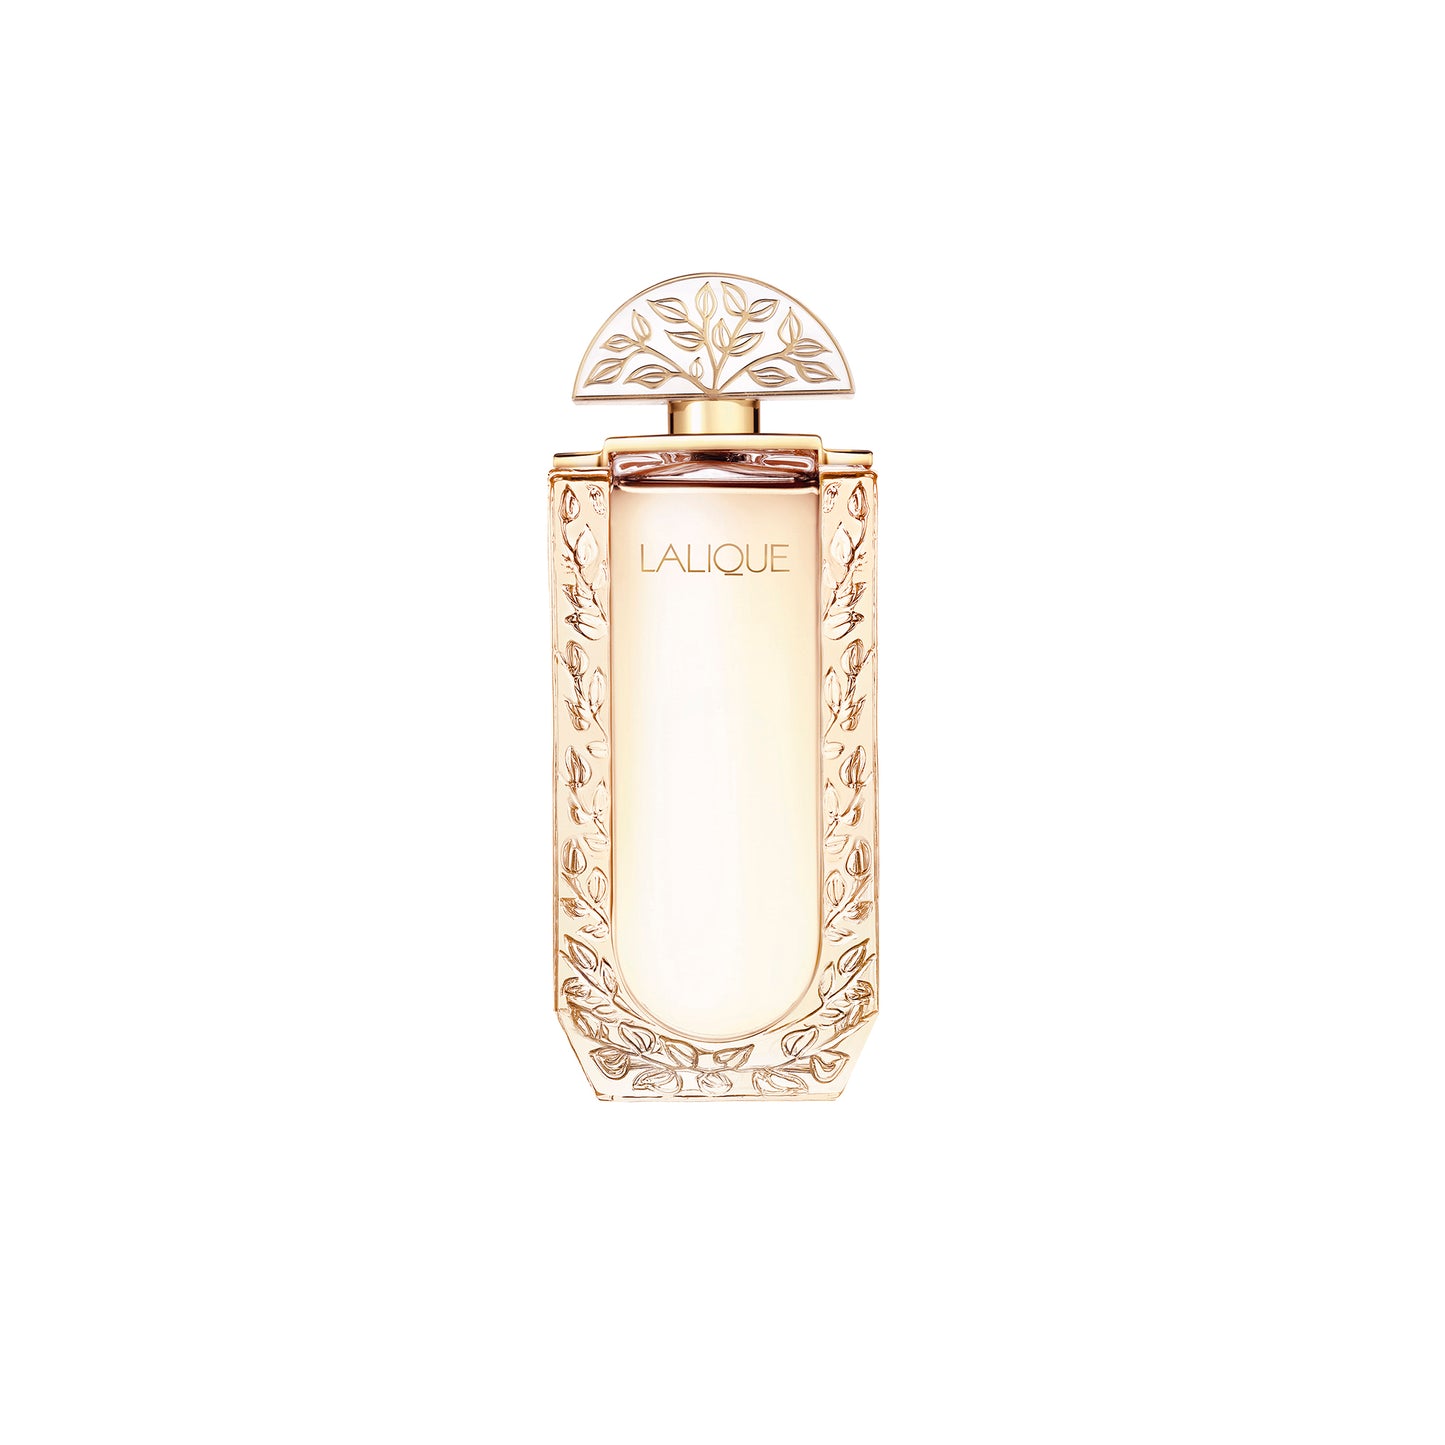 Lalique de Lalique 3.3 oz Eau de Parfum